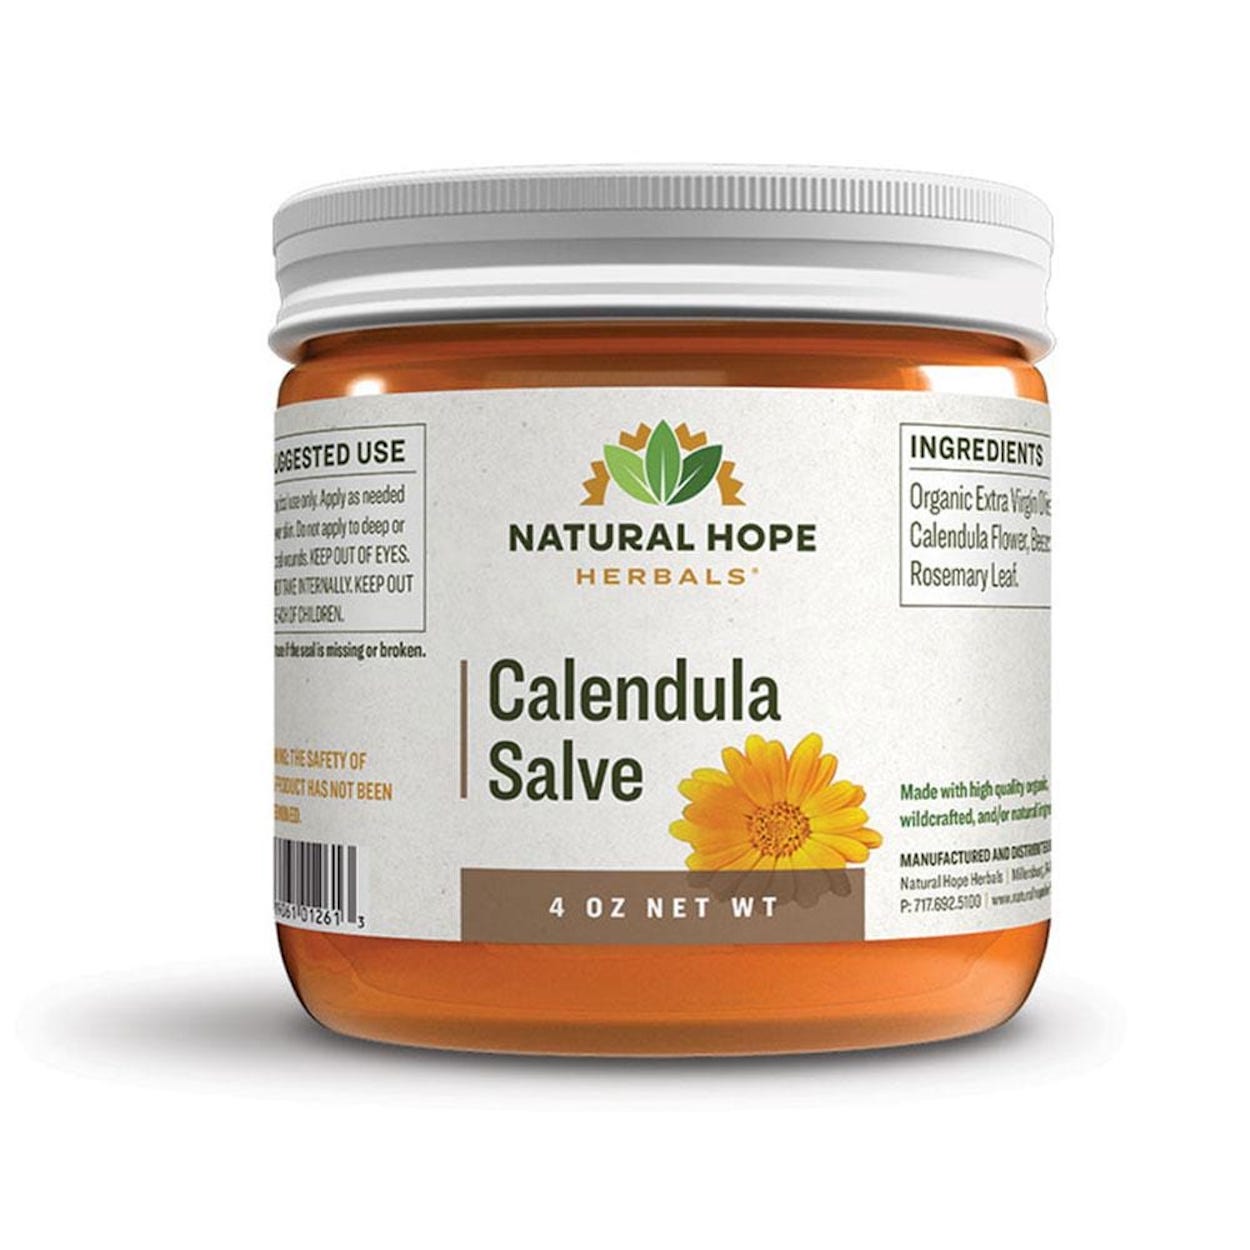 Calendula Salve - Natural Hope Herbals